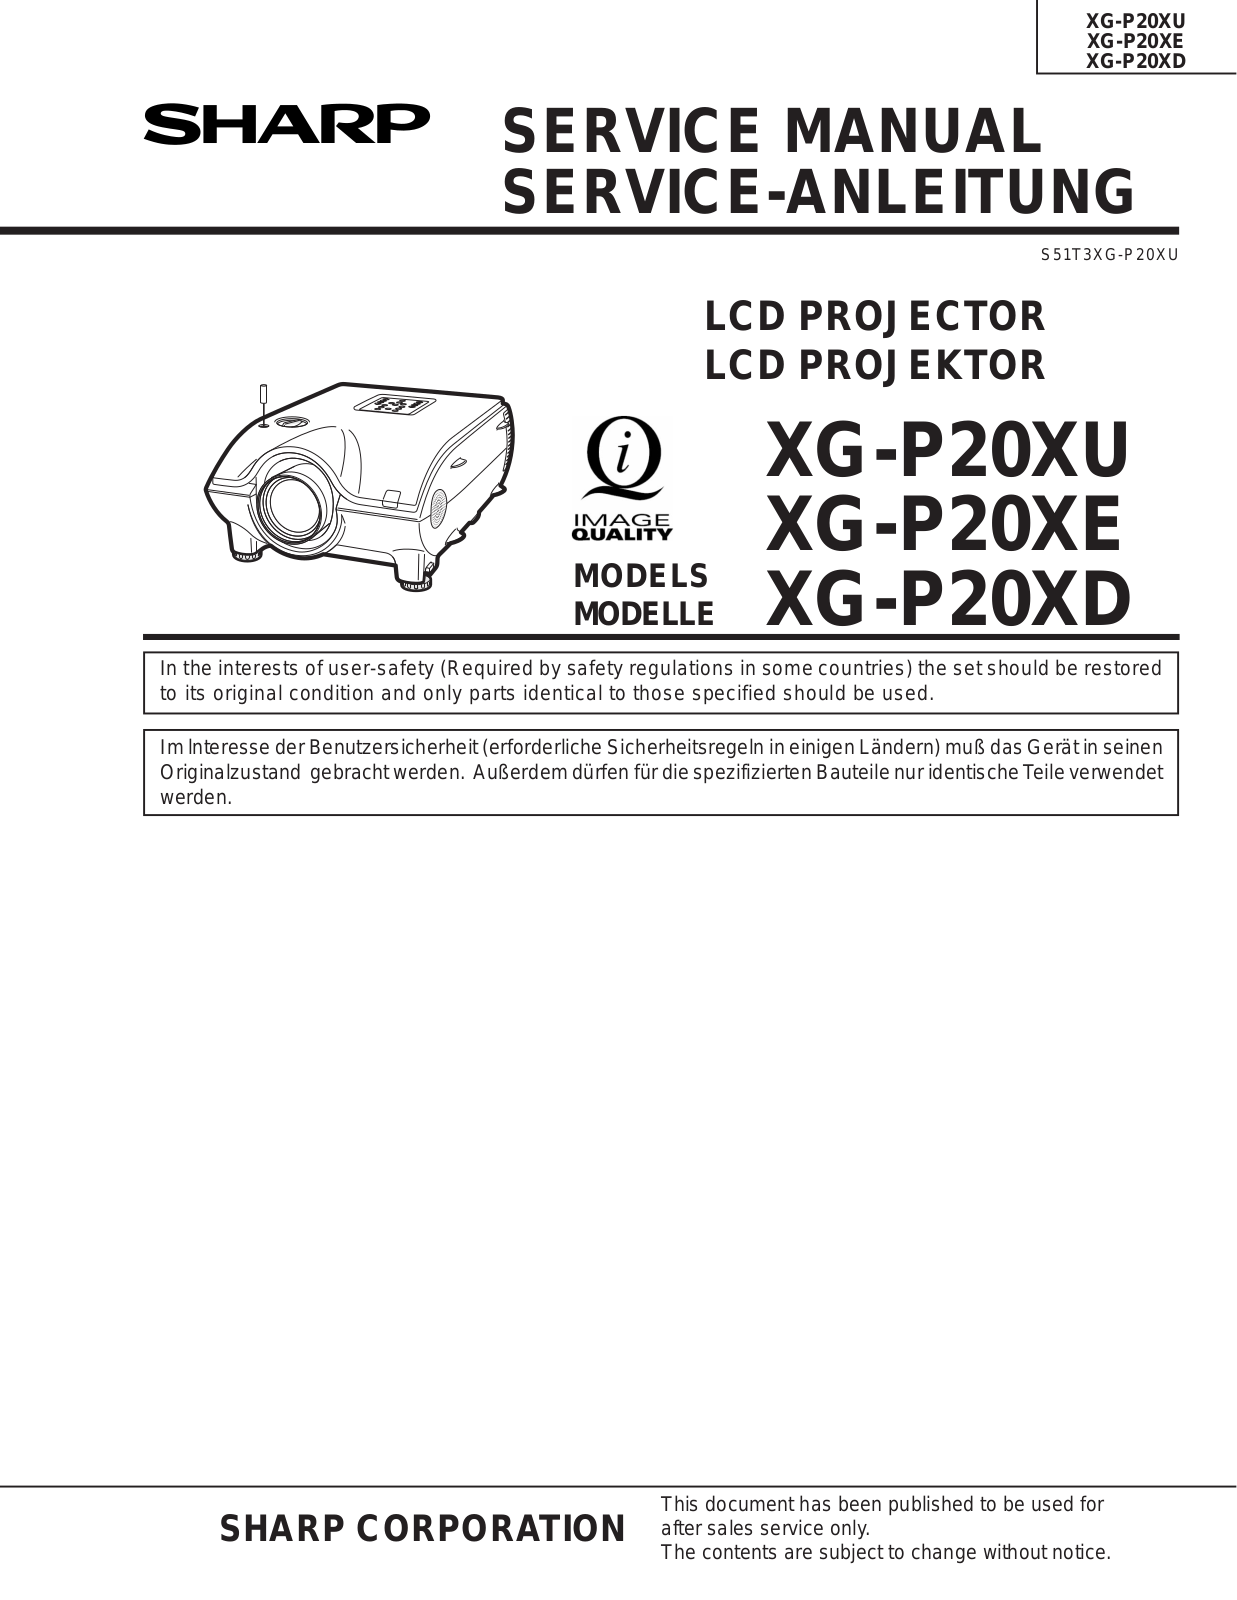 Sharp XG-P20XU, XG-P20XE, XG-P20XD Service Manual